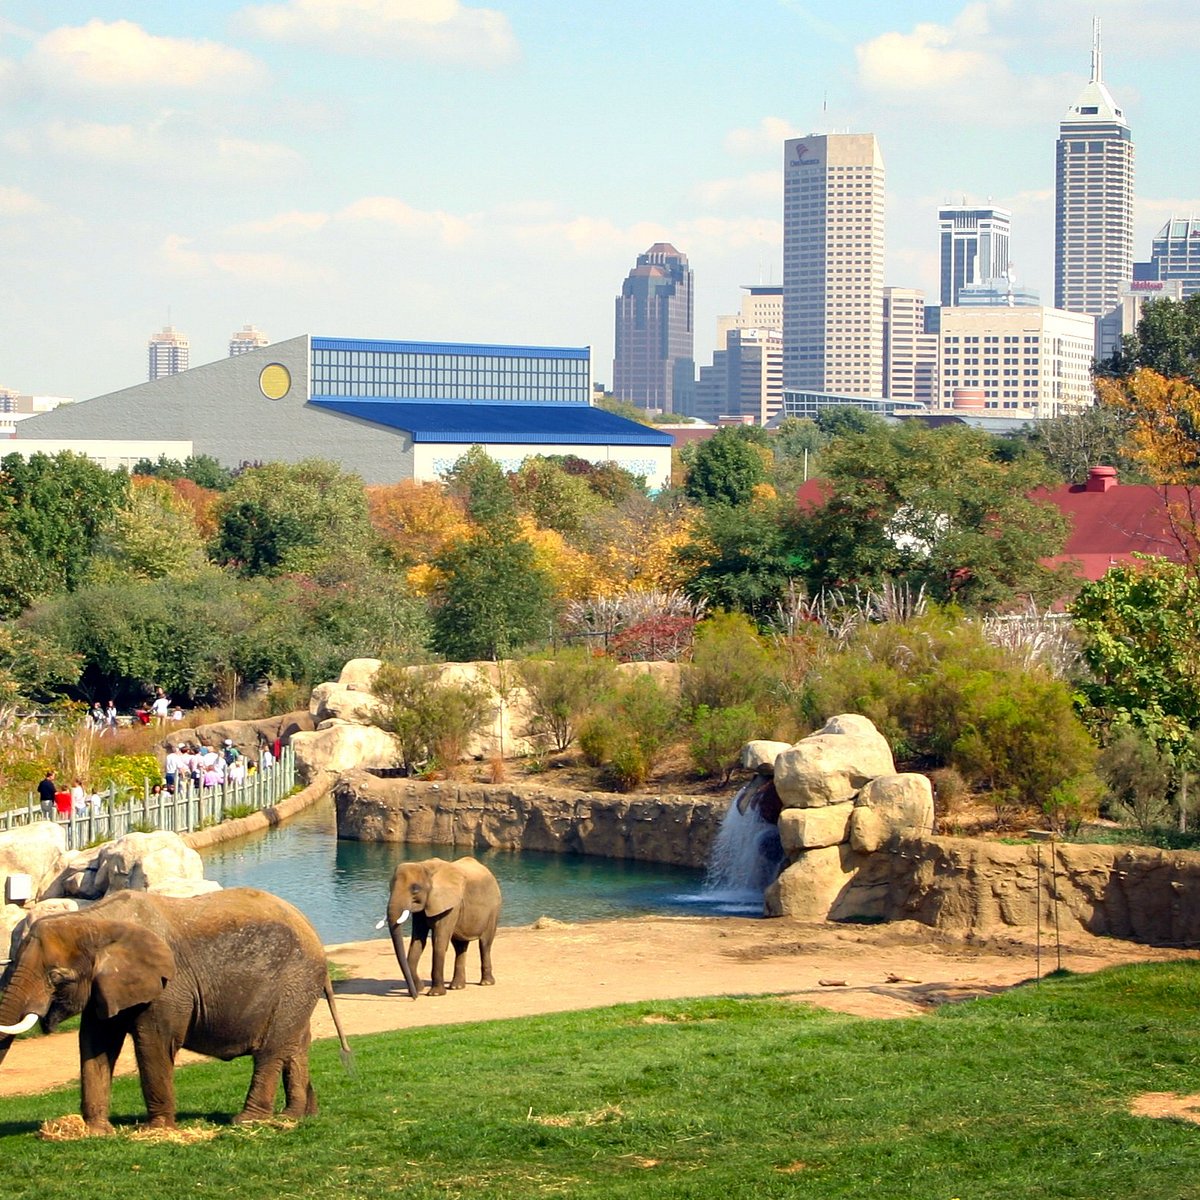 Indianapolis Zoo 2022 Alles wat u moet weten VOORDAT je gaat